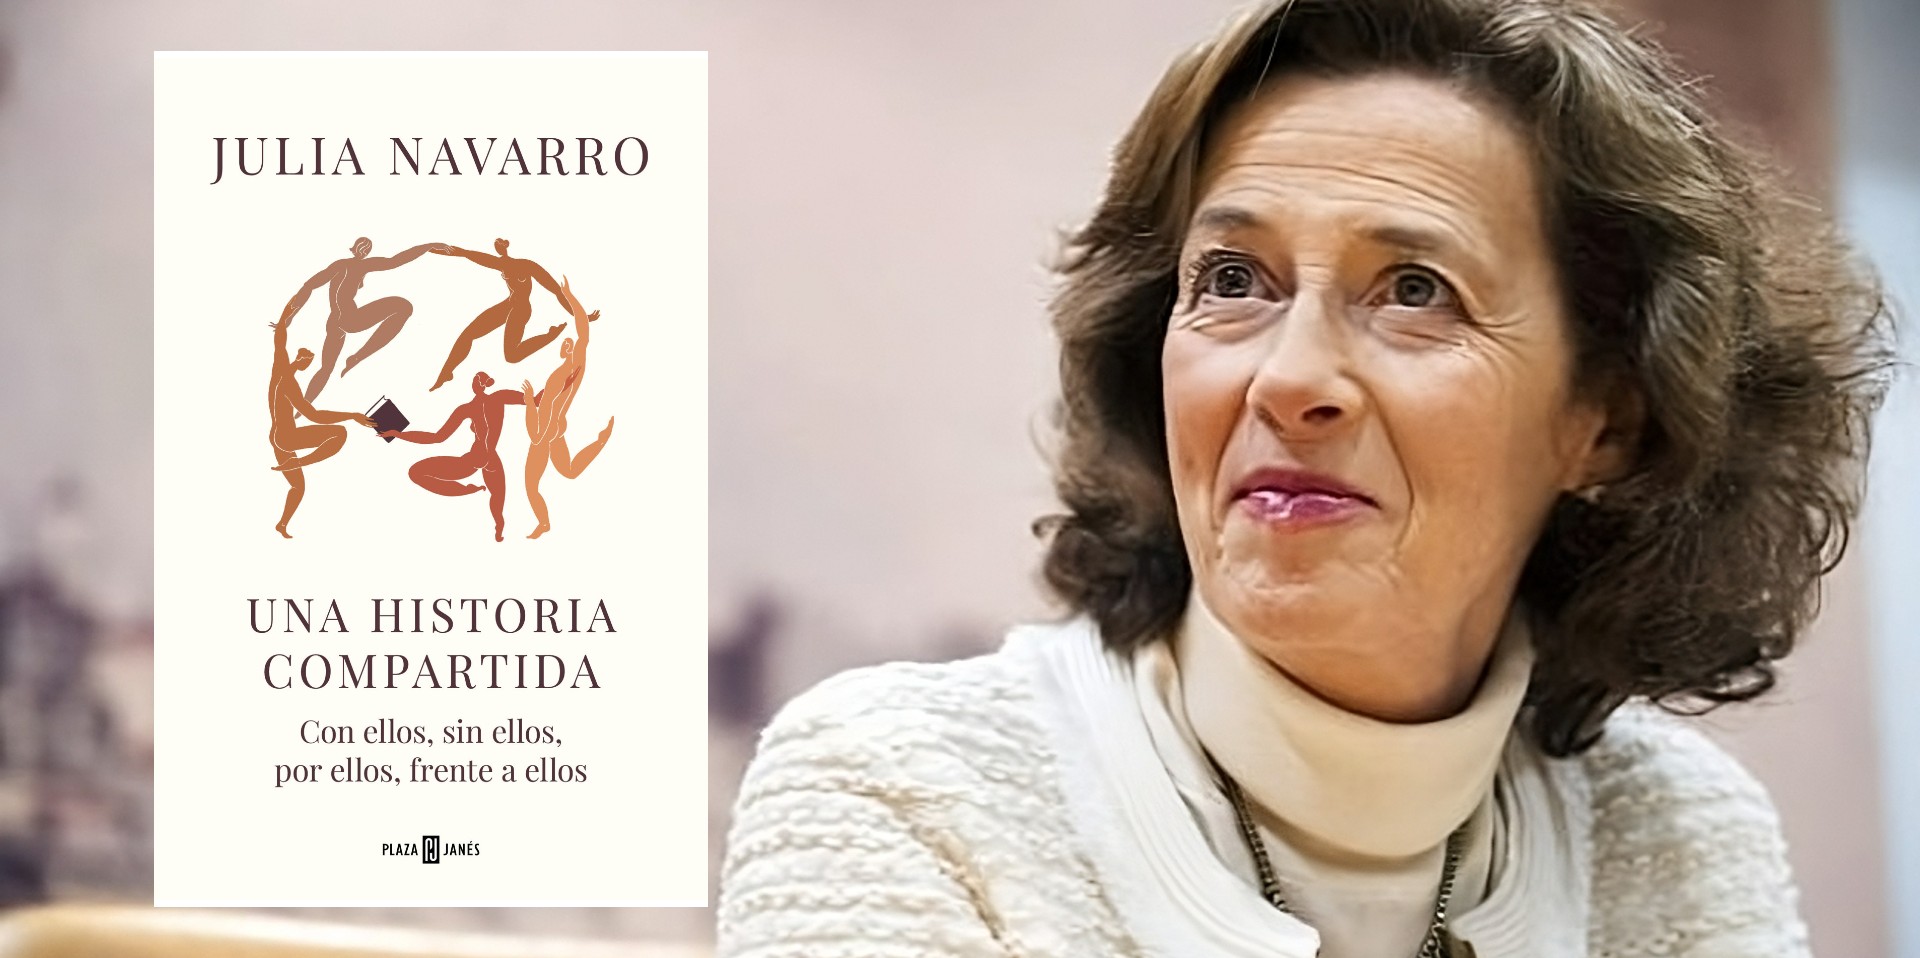 La escritora española Julia Navarro y su reivindicación de lo femenino en "Una historia compartida".